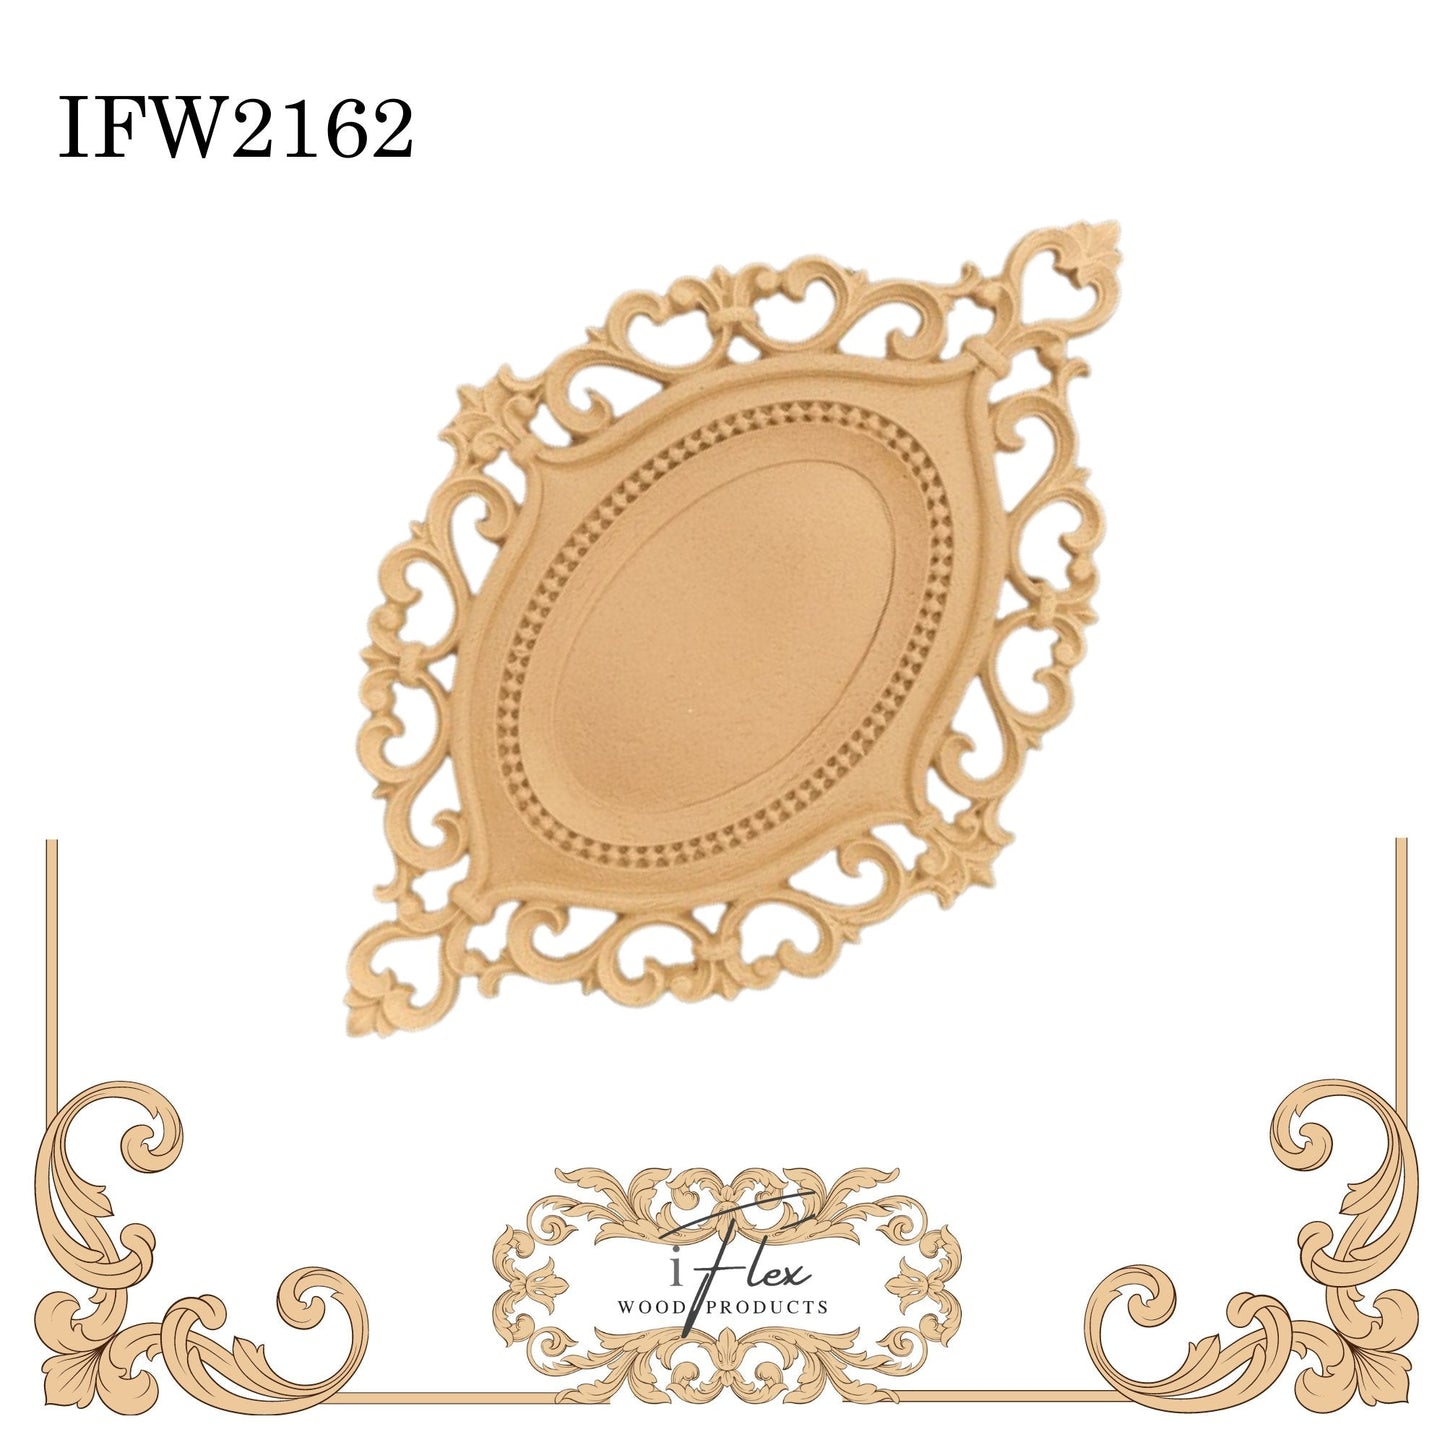 IFW 2162